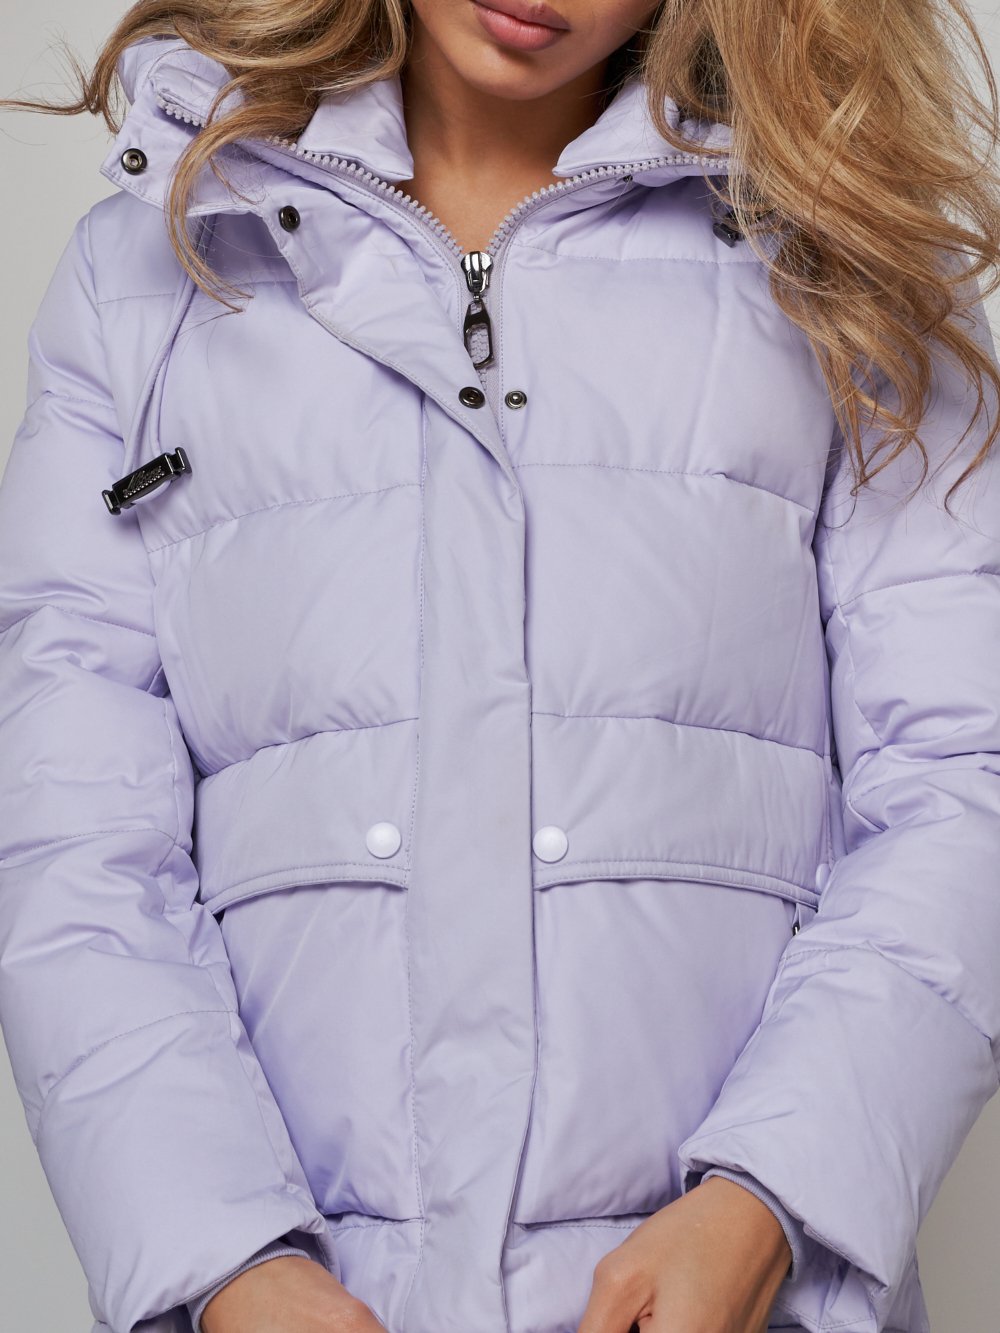 Купить куртку зимнюю оптом от производителя недорого в Москве 52303F 1